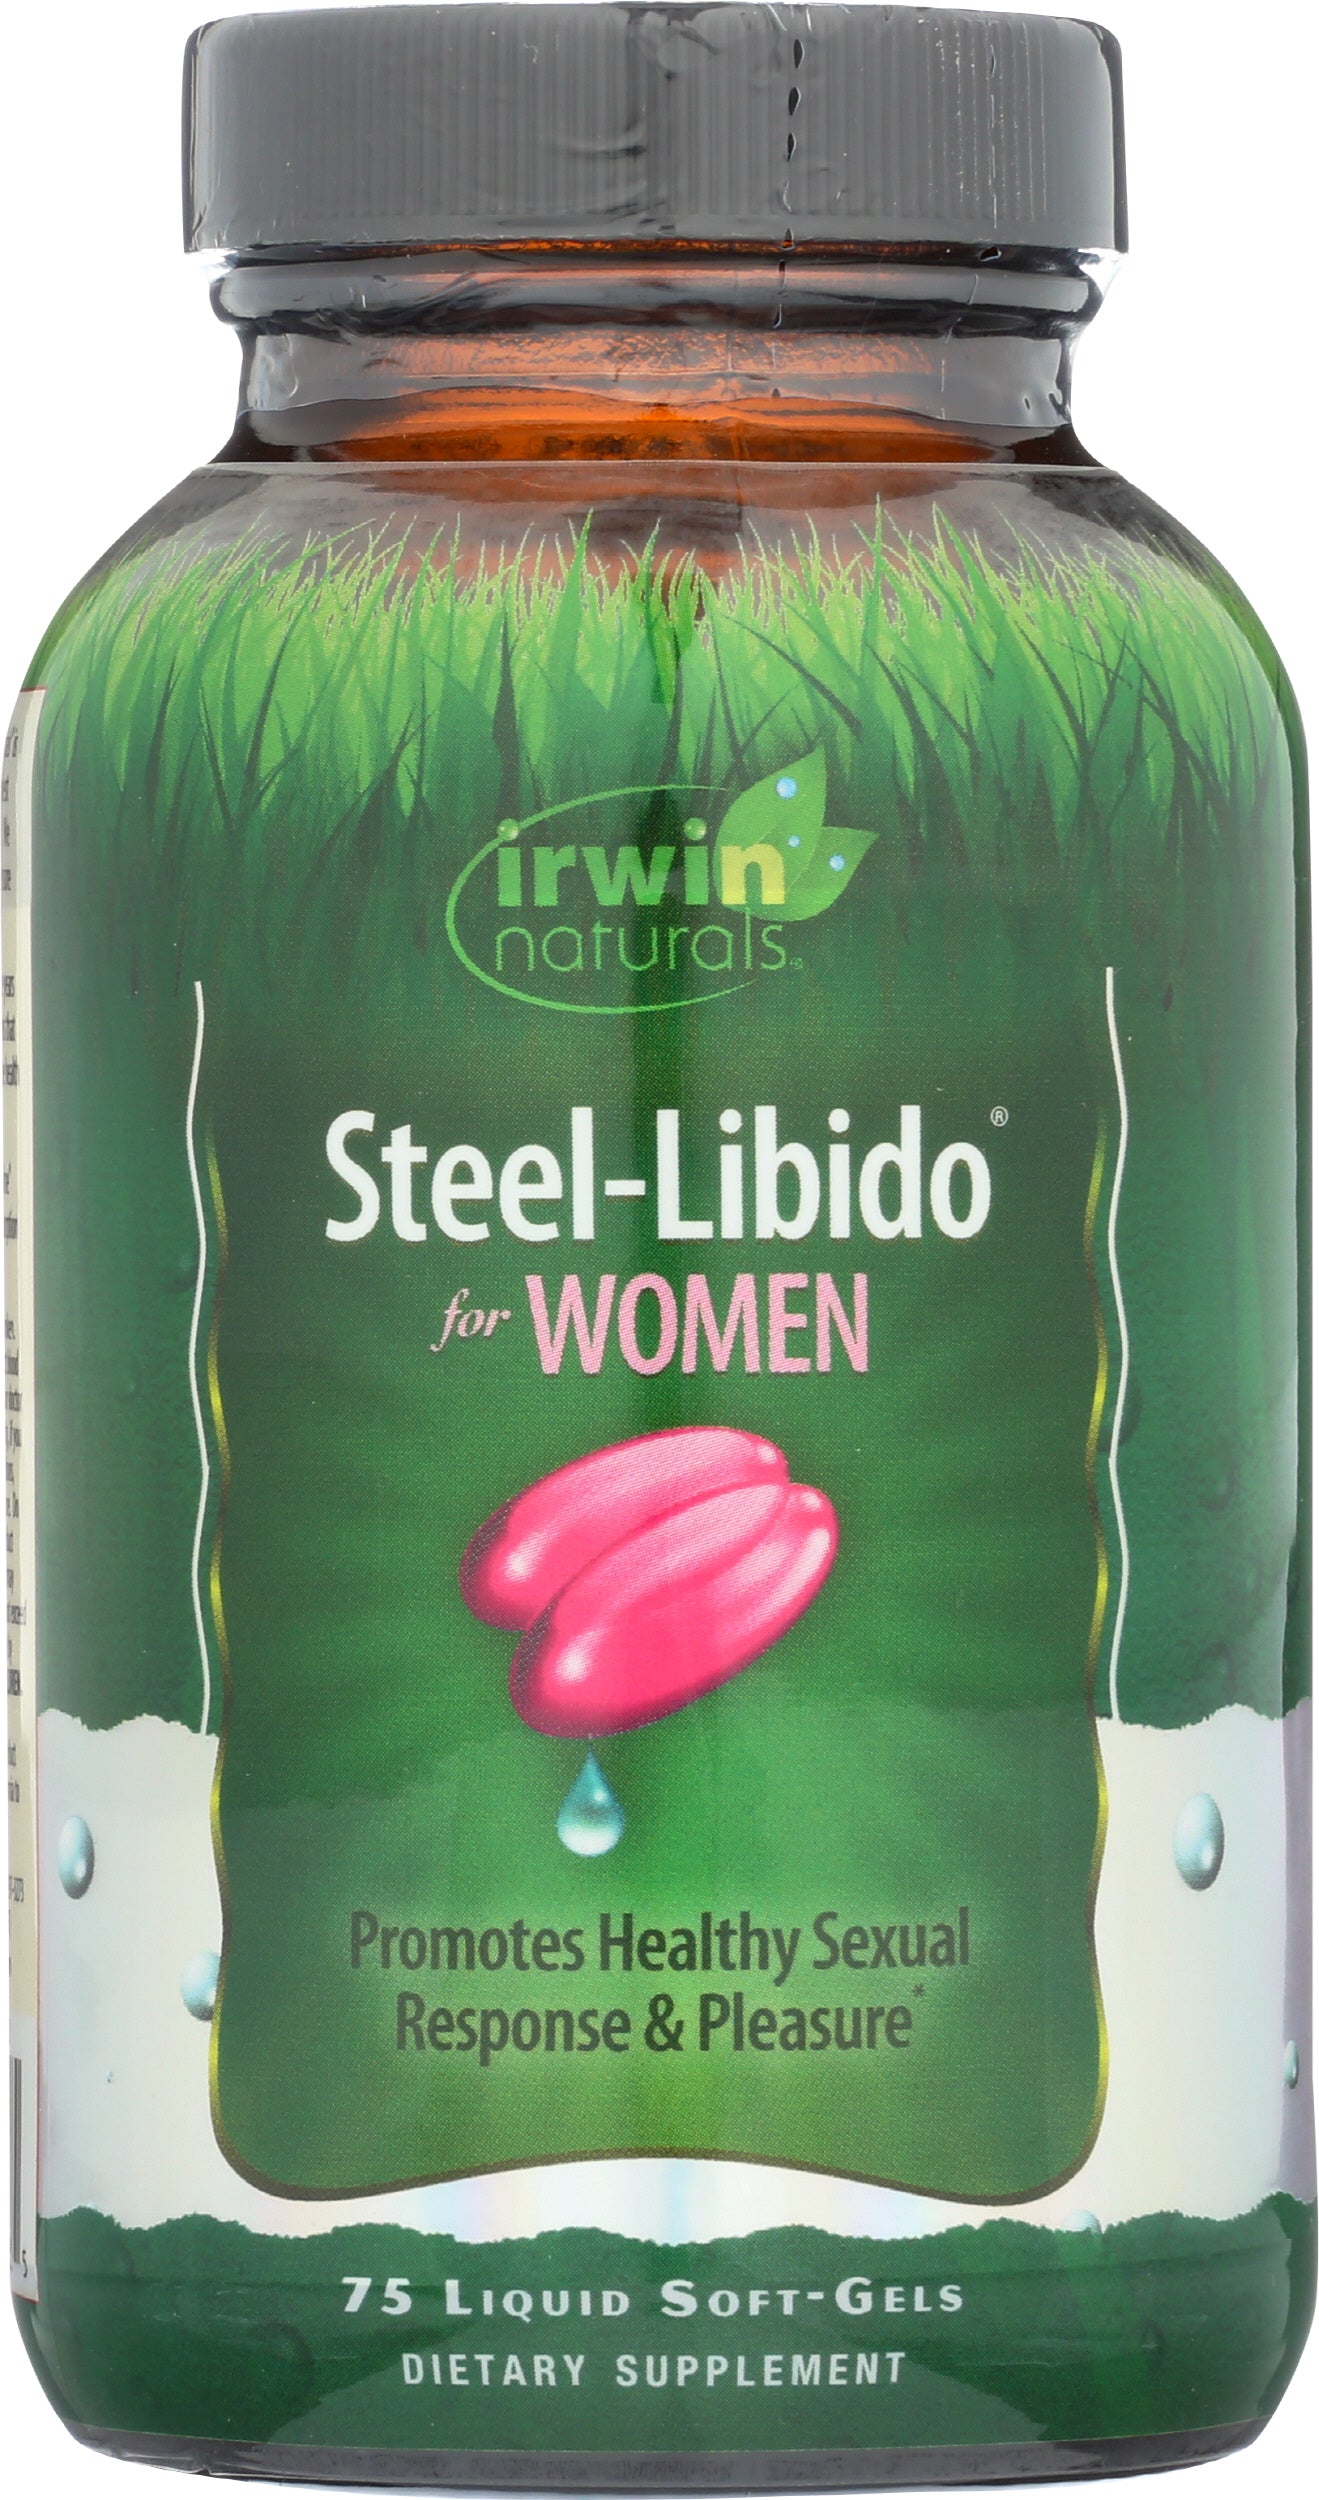 Irwin Naturals Steel-Libido for Women 75 Liquid Soft Gels Front